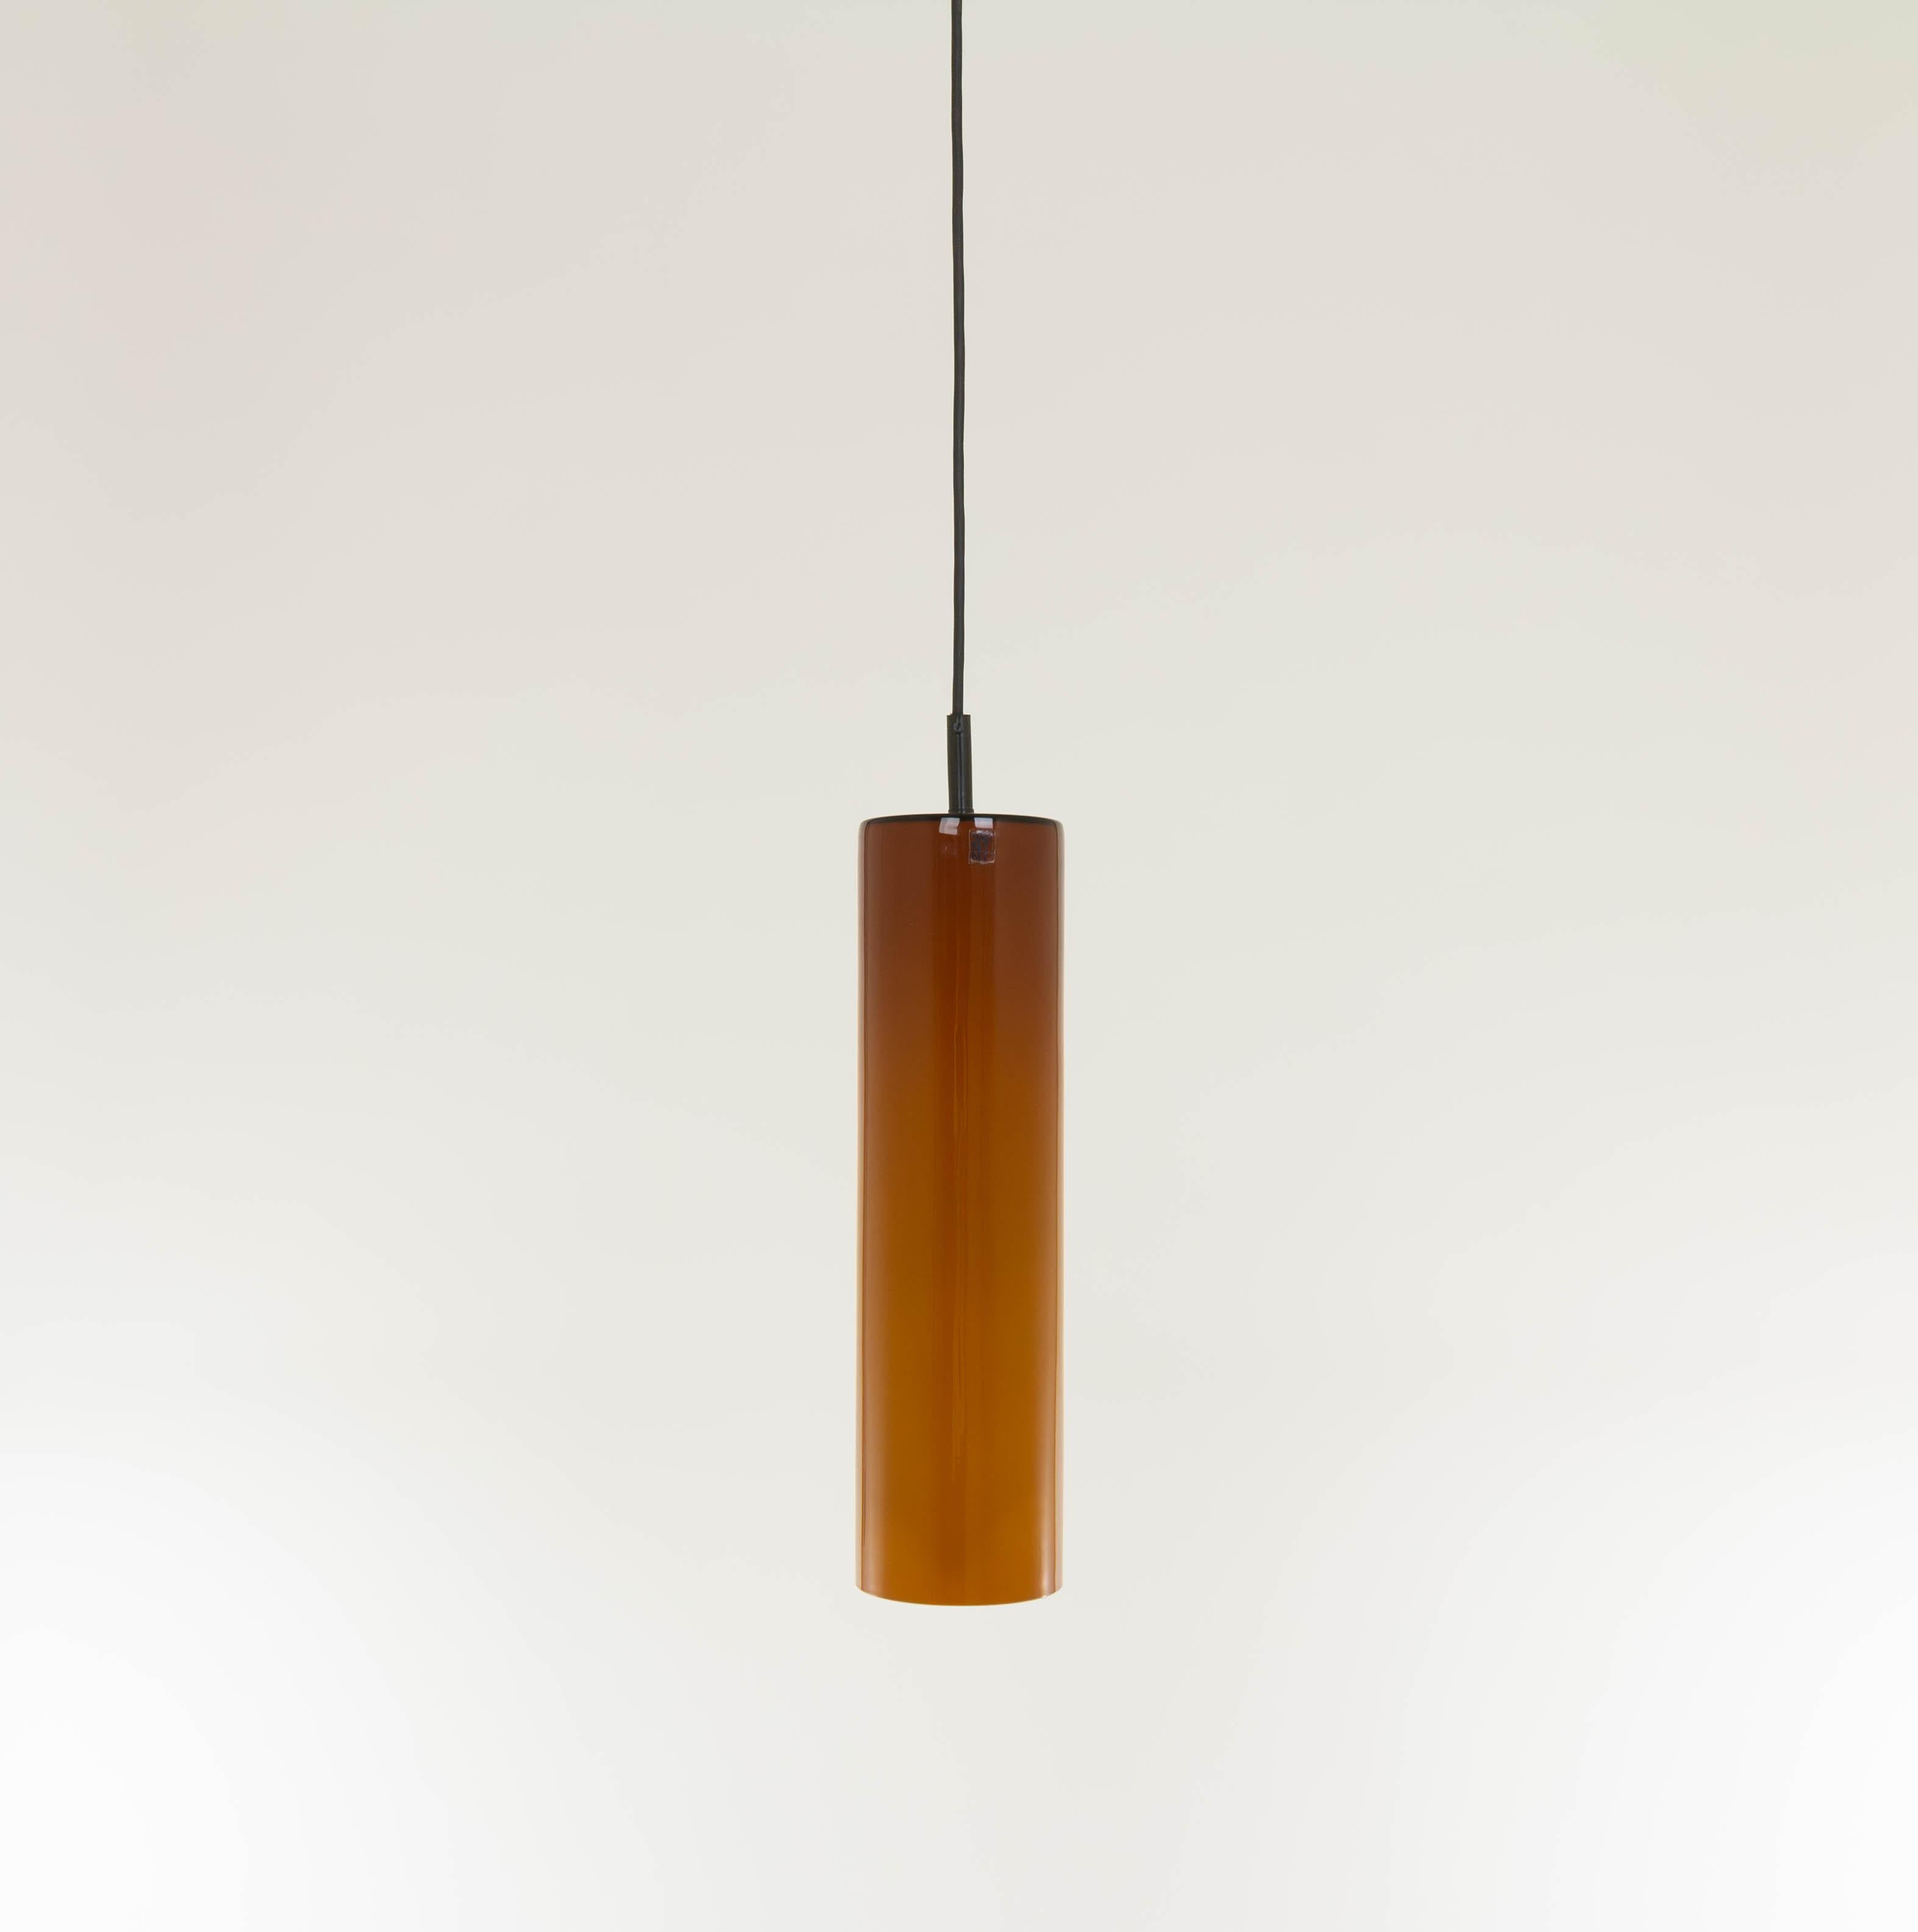 Pendentif de forme cylindrique de couleur ambre, conçu et produit par le spécialiste du verre Venini.

Ce modèle est conçu dans les années 1950, mais il s'agit d'une production plus récente.

La lampe est en parfait état car elle n'a jamais été